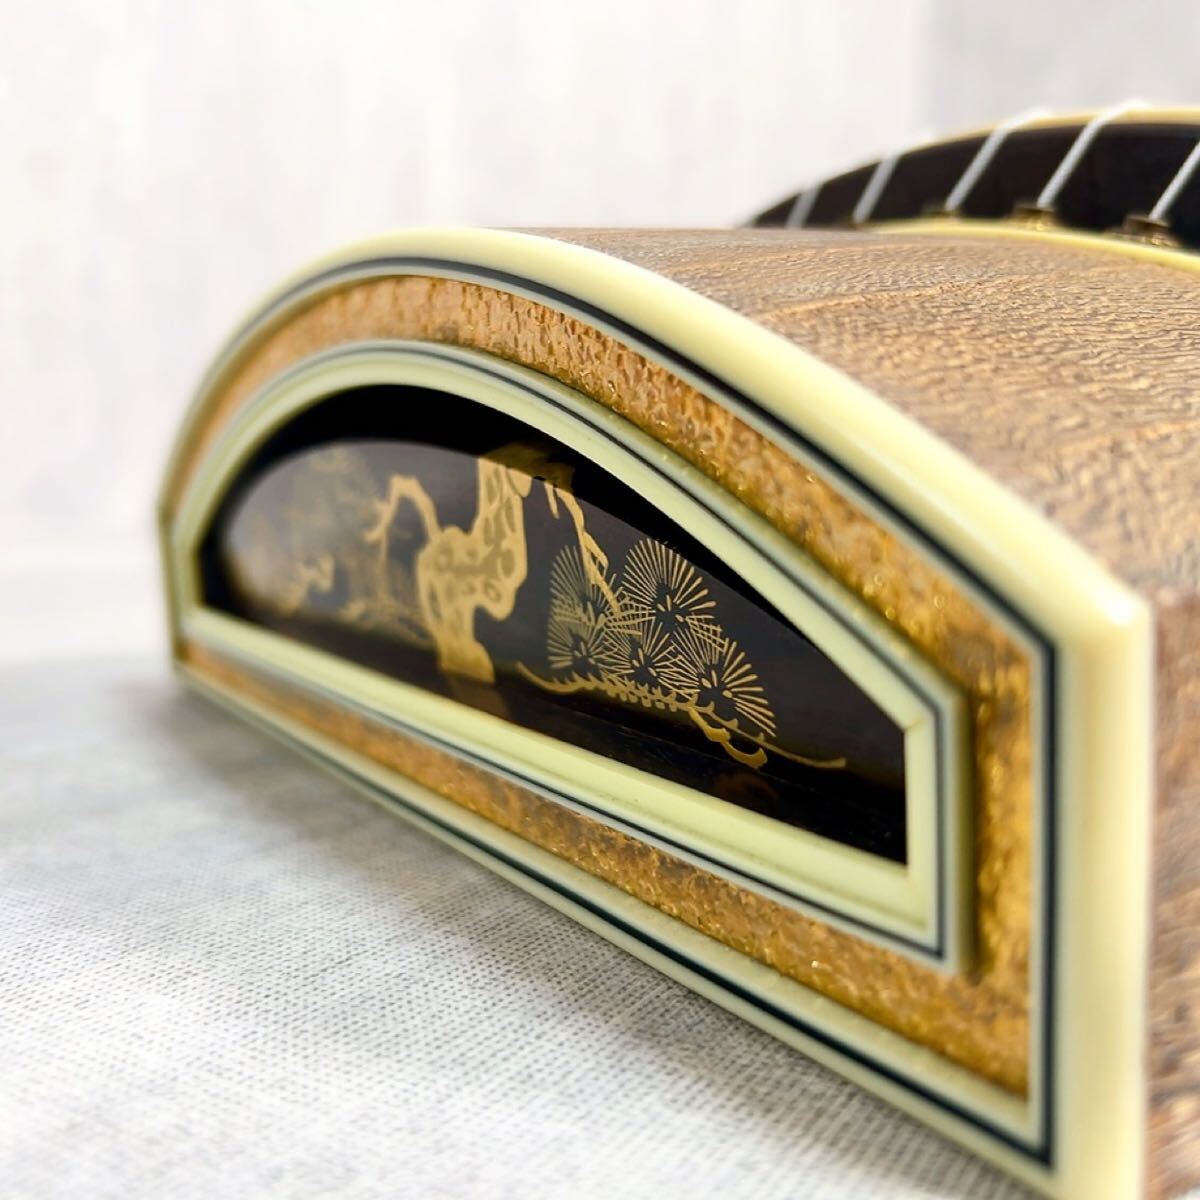 Z063 высококлассный . кото 13 струна . запись шторка сударэ резьба по дереву средний . струнные инструменты Fuji type традиционные японские музыкальные инструменты 